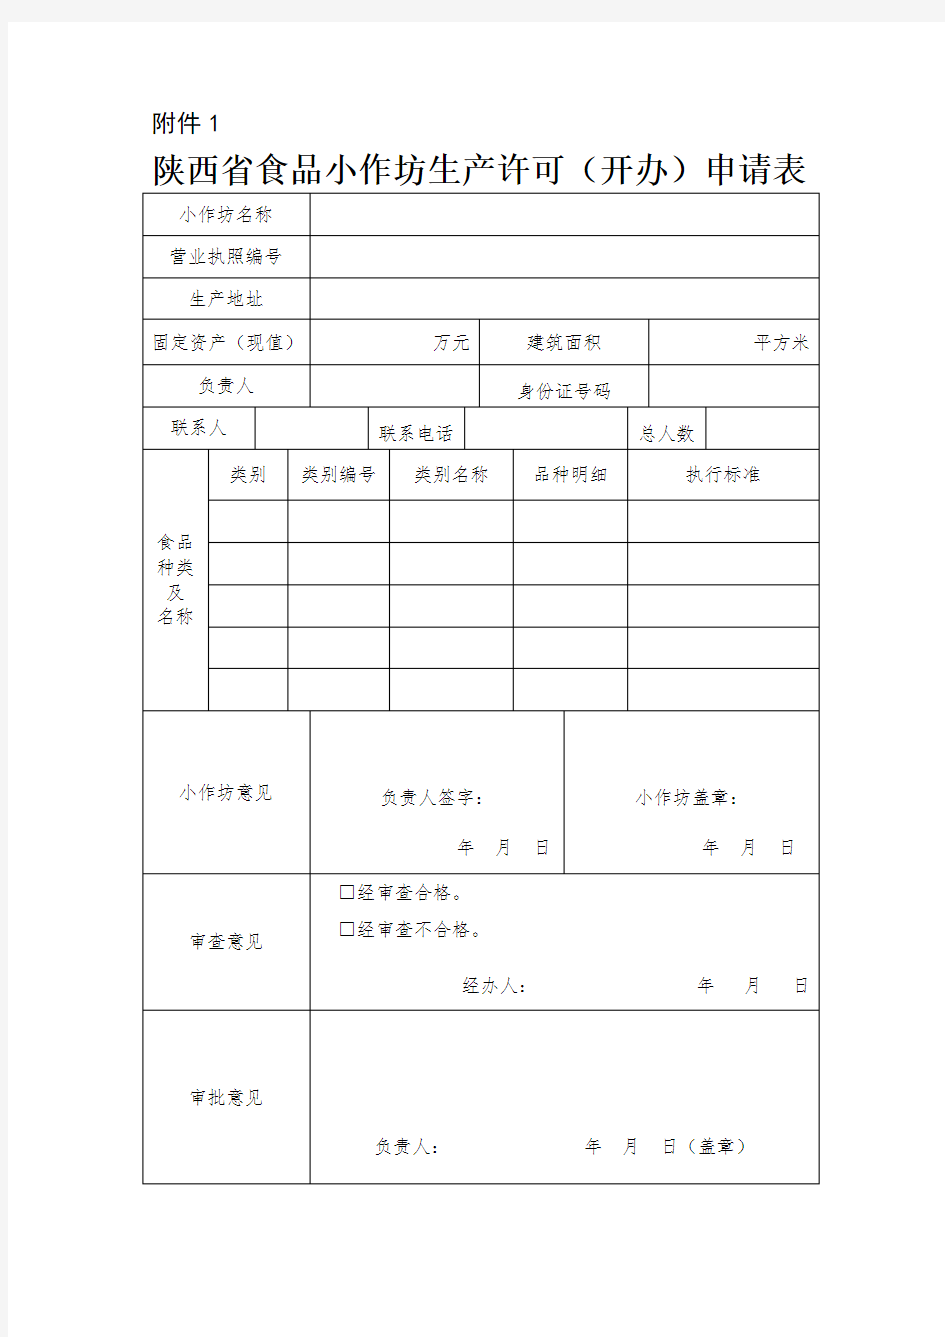 陕西省食品小作坊生产许可(开办)申请表